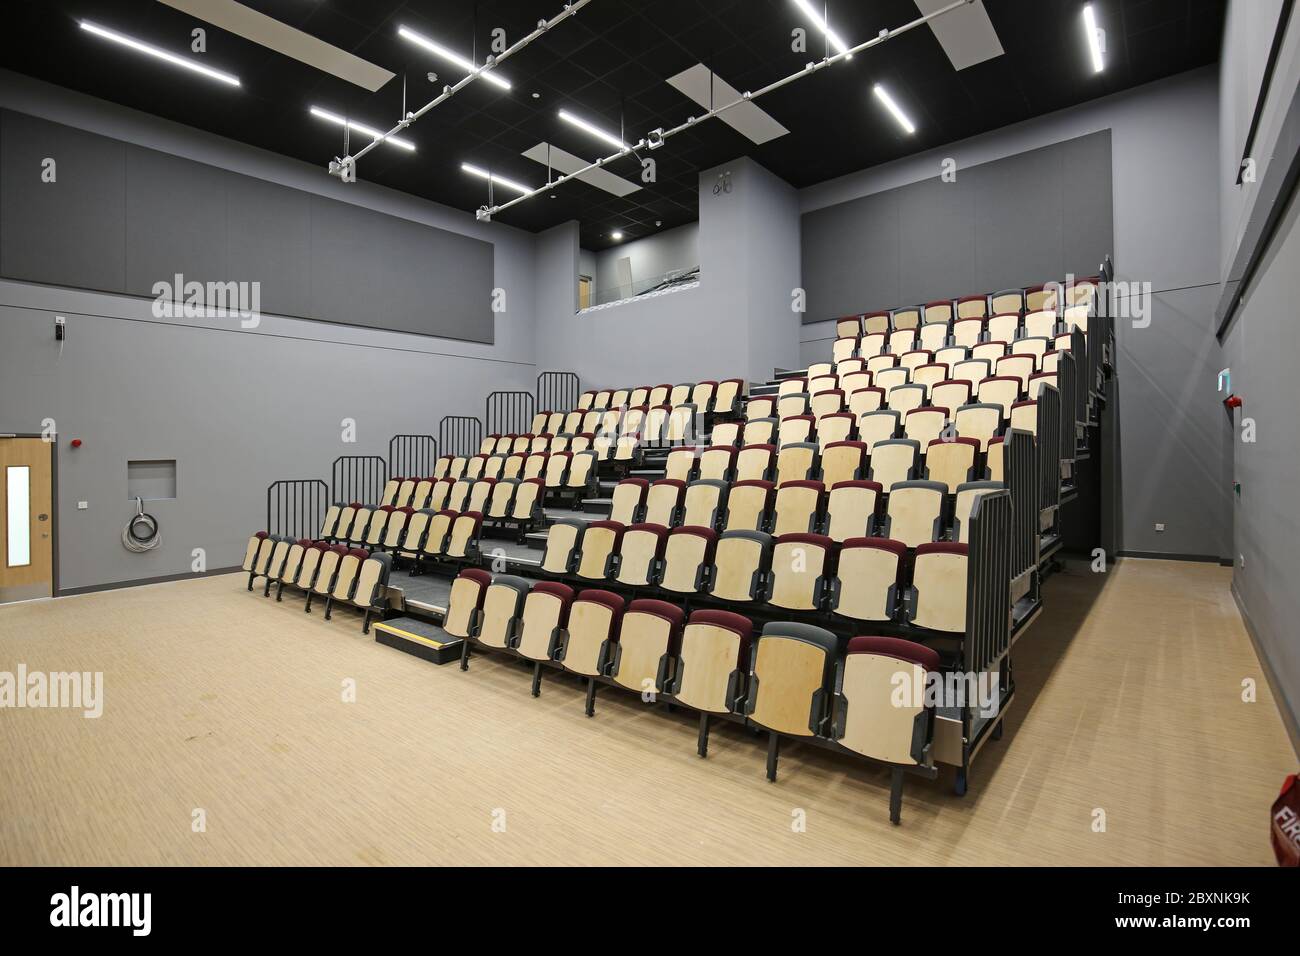 Ausziehbare Bleacher-Sitzmöbel in einer neu erbauten Schulhalle im Süden Londons, Großbritannien. Zeigt das System vollständig ausgefahren und bietet 9 Reihen gestufter Sitzplätze. Stockfoto